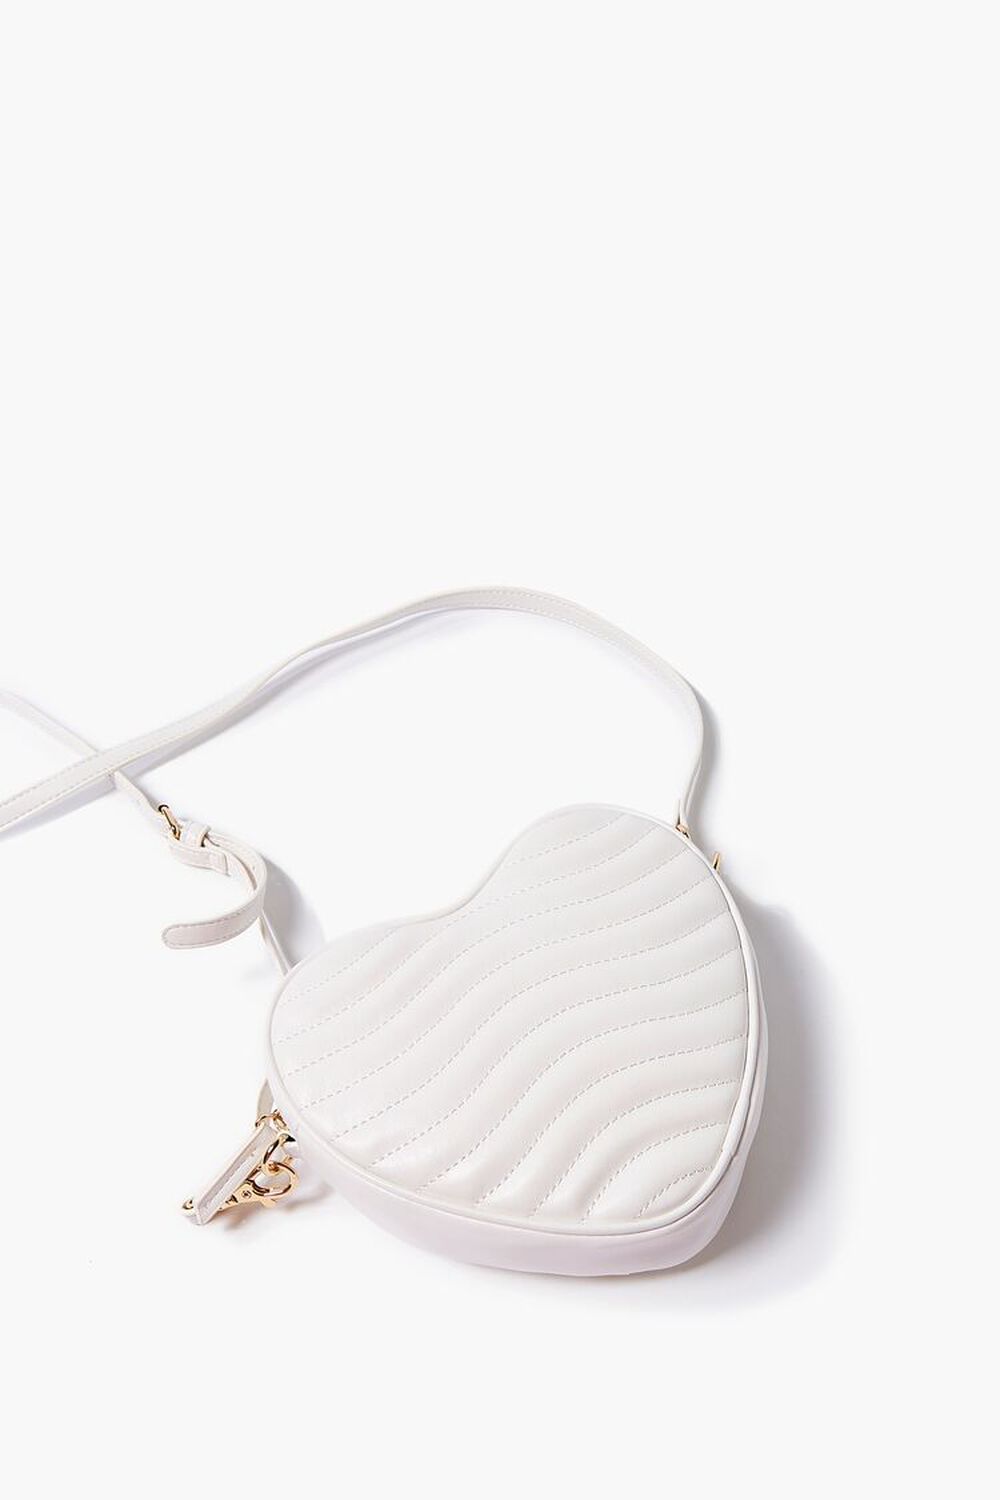 Heart Bag in White